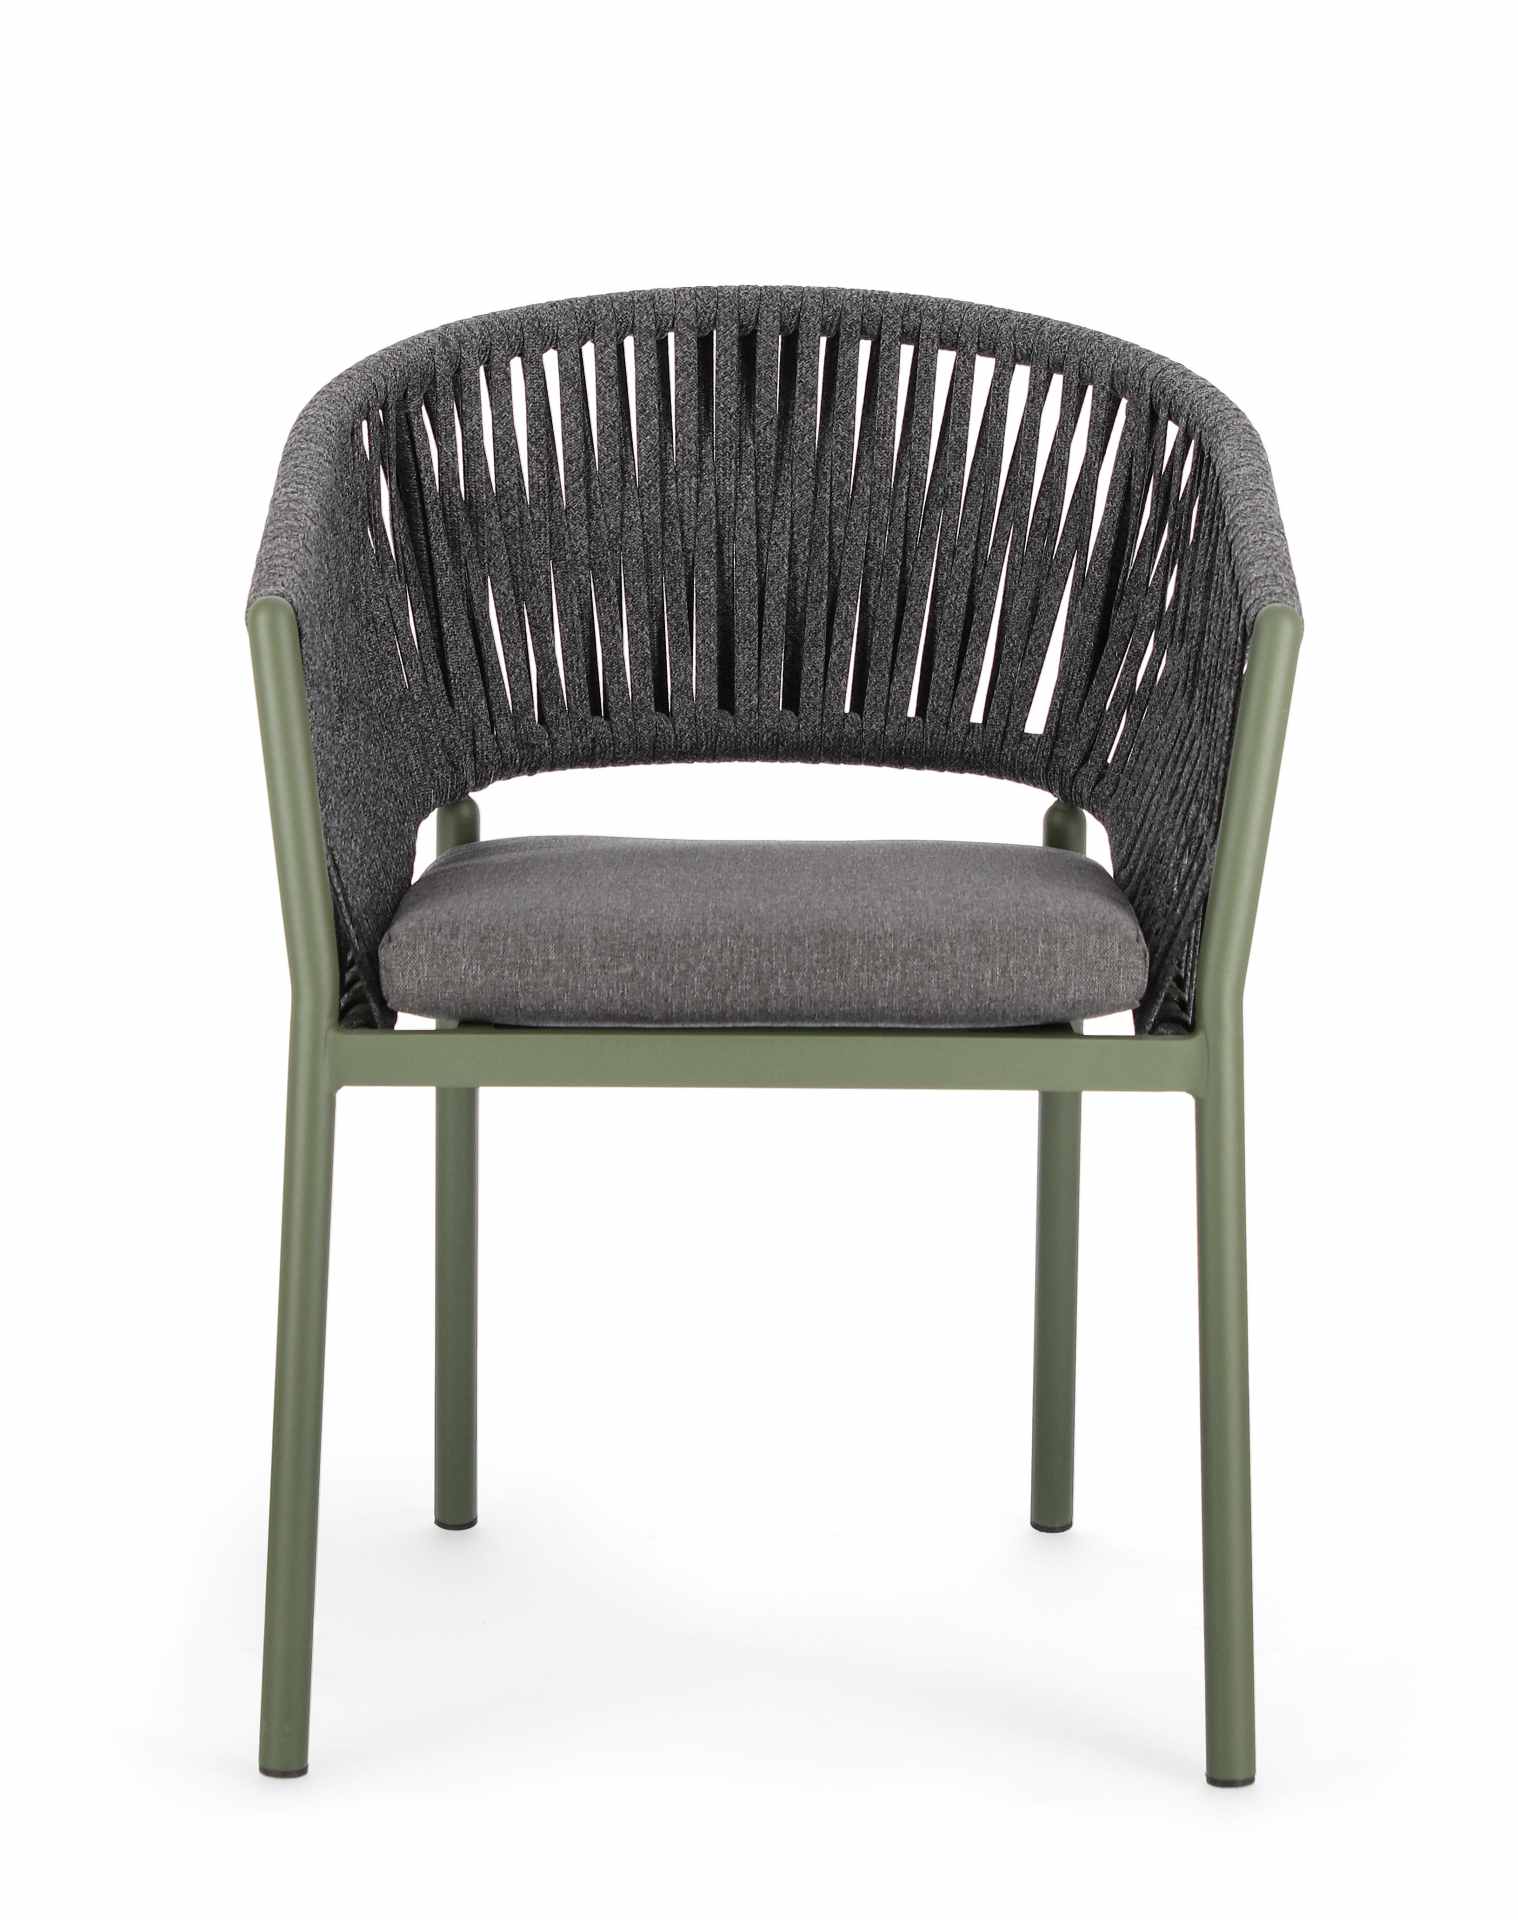 Der Gartenstuhl Florencia überzeugt mit seinem modernen Design. Gefertigt wurde er aus Olefin-Stoff, welcher einen Anthrazit Farbton besitzt. Das Gestell ist aus Aluminium und hat eine grüne Farbe. Der Stuhl verfügt über eine Sitzhöhe von 49 cm und ist fü